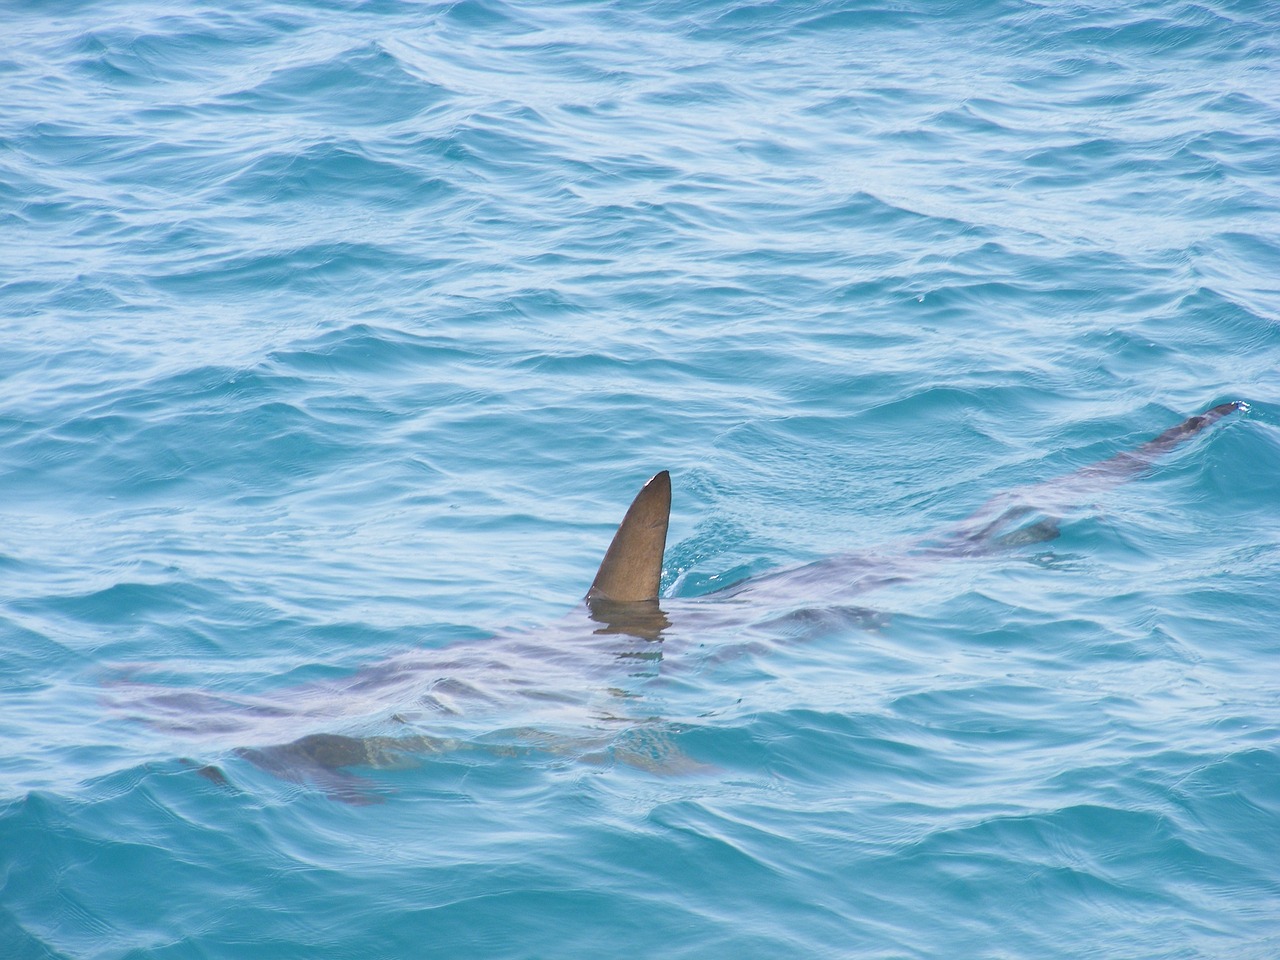 Ez a pár akkora cápákkal találkozott, mint a hajójuk, és még örültek is: „Hatalmasak voltak. Legalább 20-25 láb hosszúak lehettek”